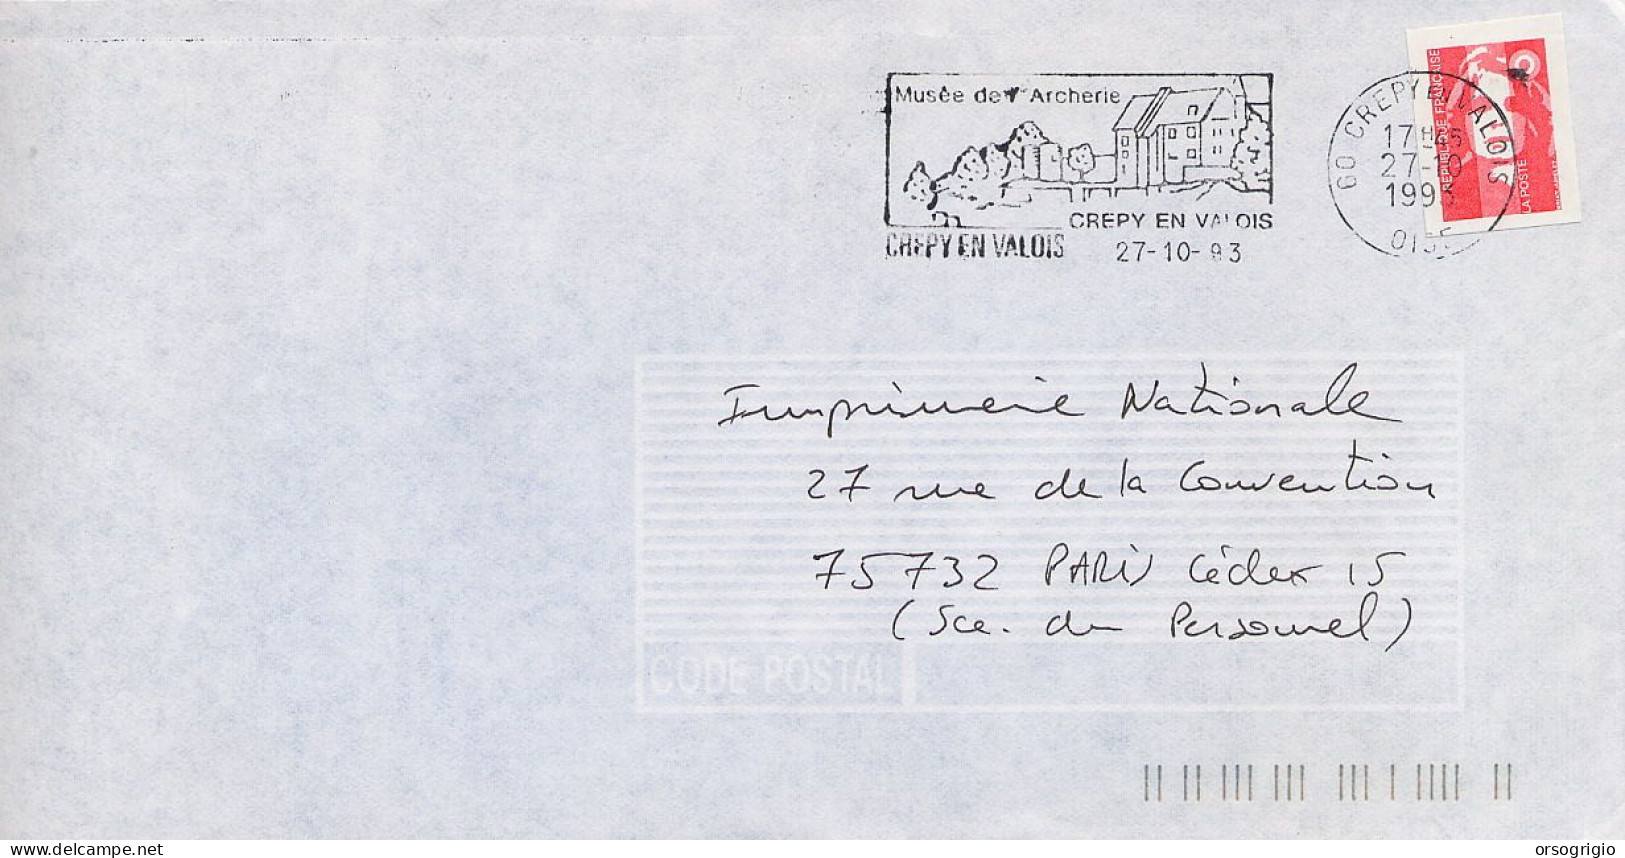 FRANCIA FRANCE -  CREPY EN VALOIS - MUSEE DE L'ARCHERIE  -  ARCO - Archery